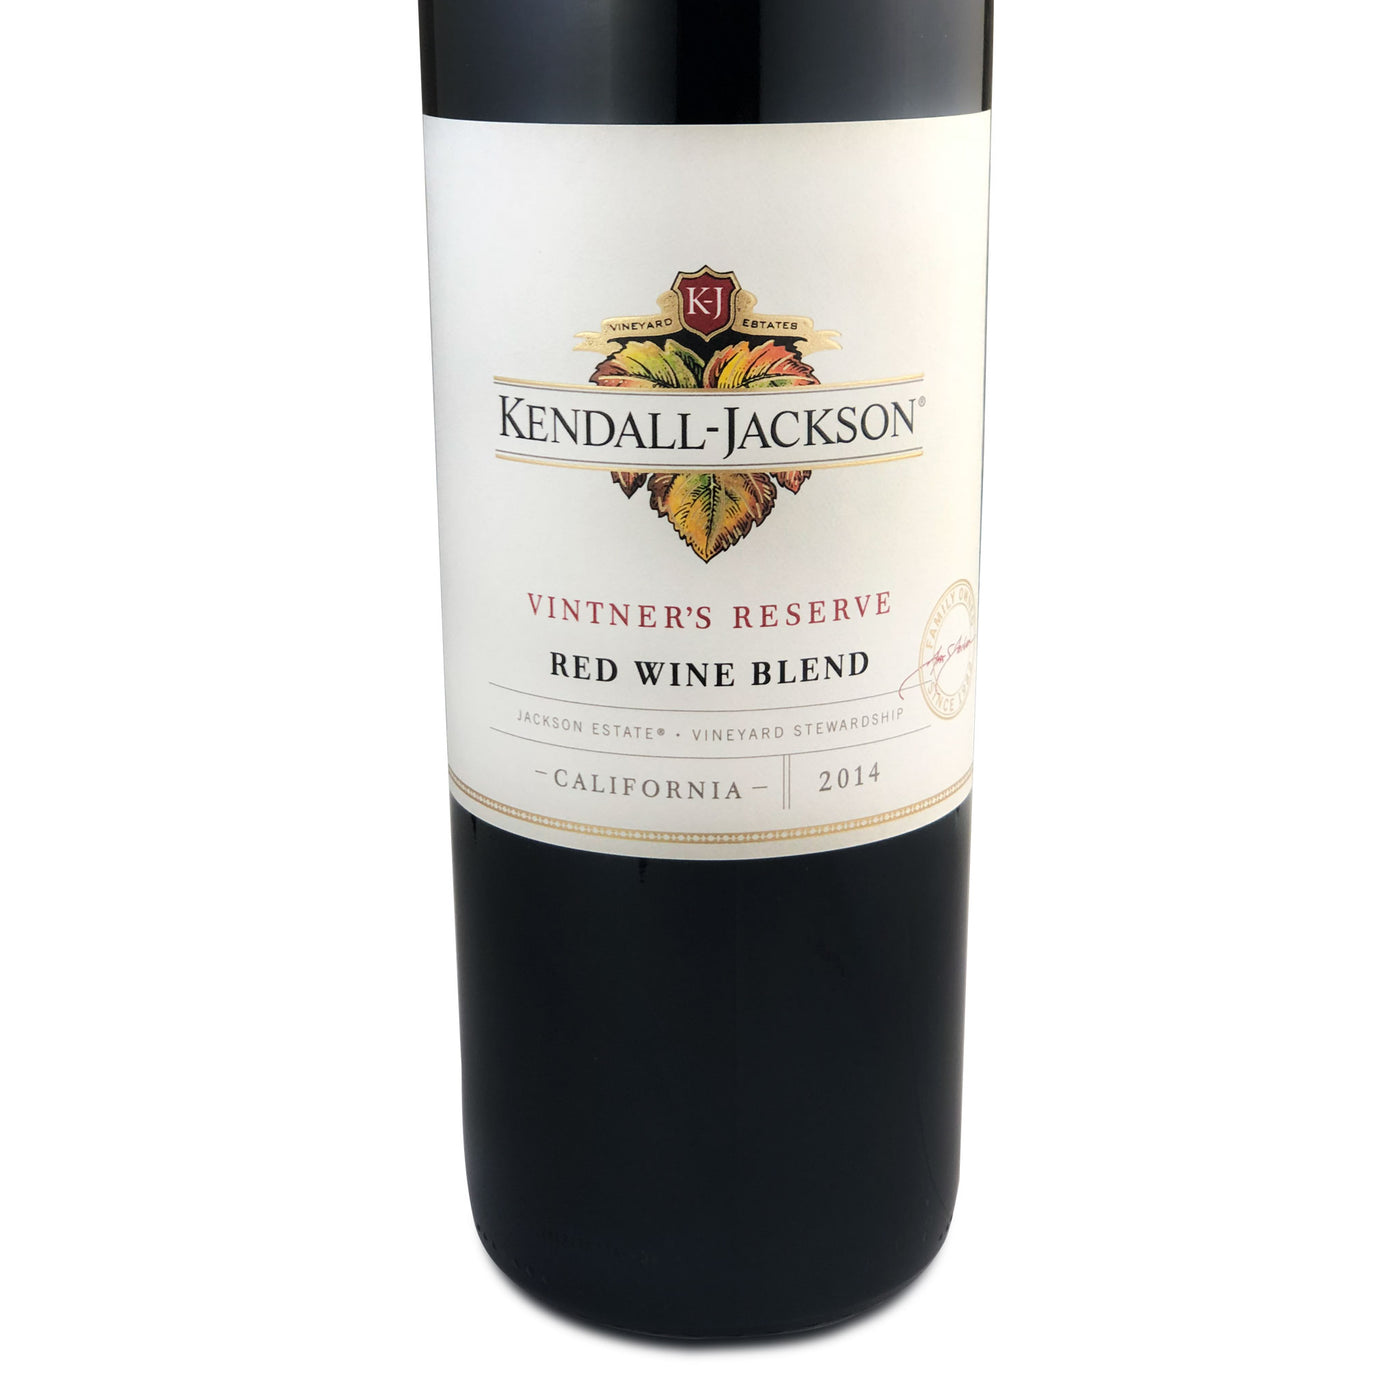 Kendall-Jackson Vintner's Reserve Red Wine Blend 2014